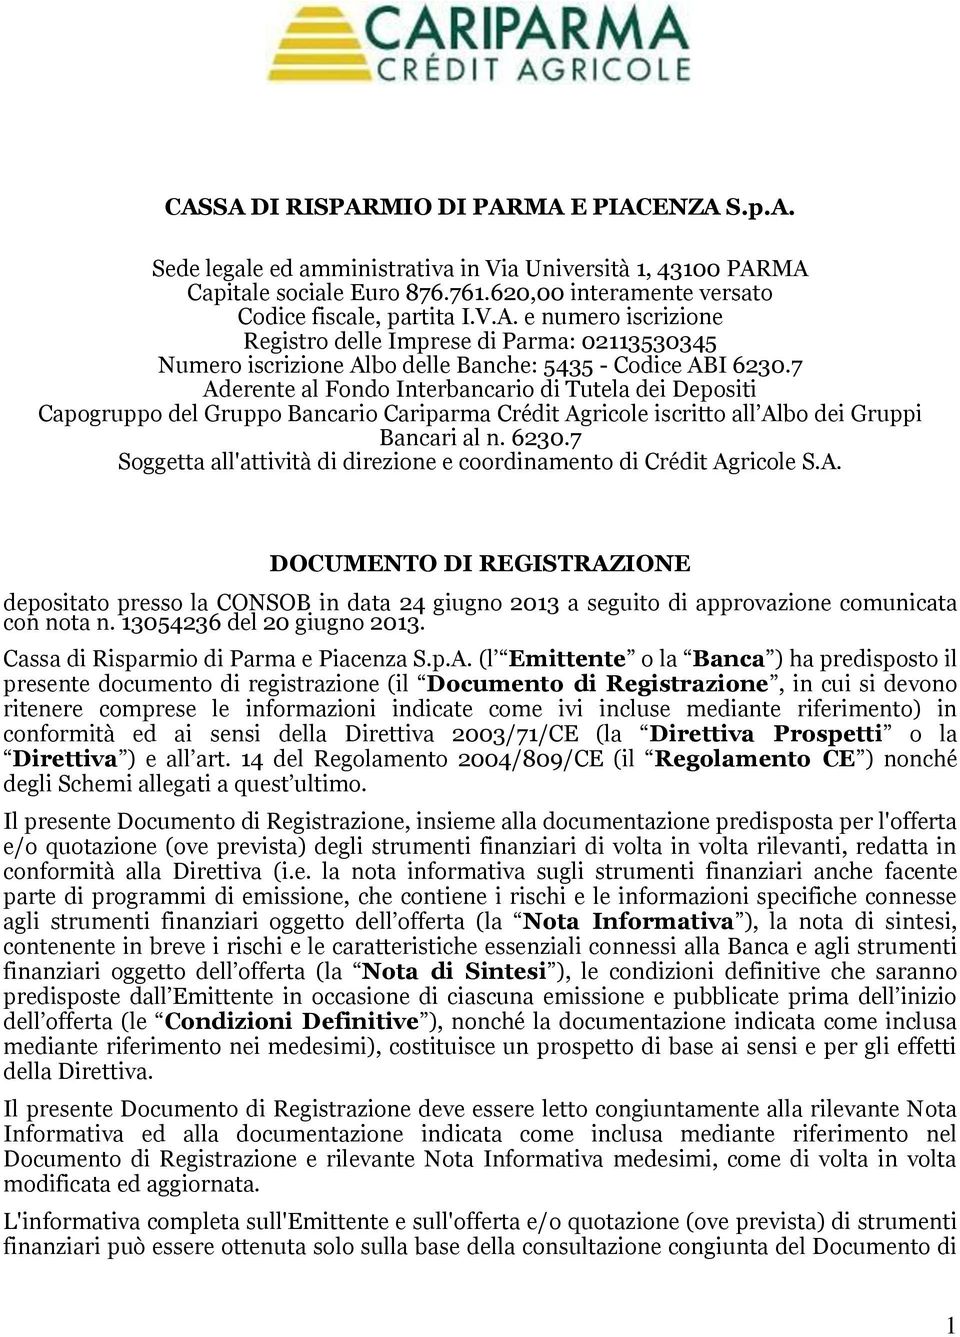 7 Soggetta all'attività di direzione e coordinamento di Crédit Agricole S.A. DOCUMENTO DI REGISTRAZIONE depositato presso la CONSOB in data 24 giugno 2013 a seguito di approvazione comunicata con nota n.